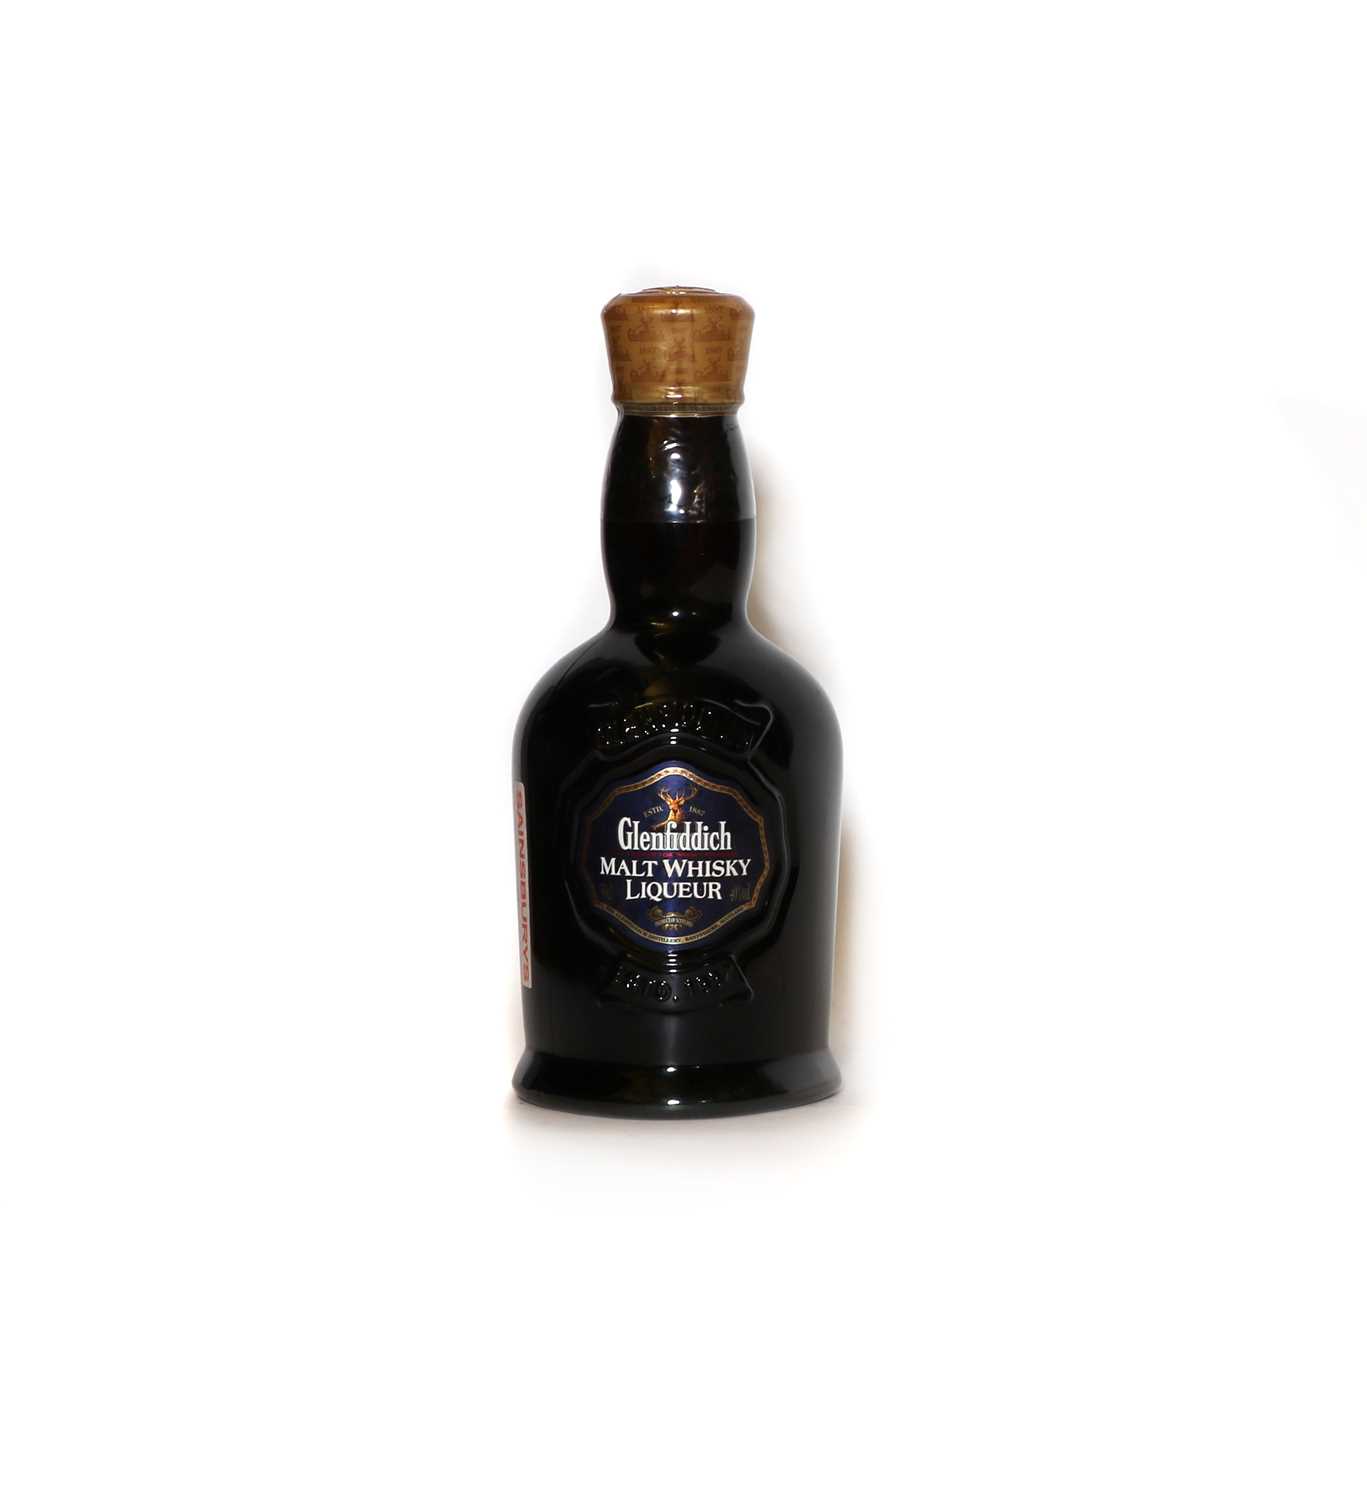 Lot 318 - Glenfiddich Malt Whisky Liqueur, 50cl (1)